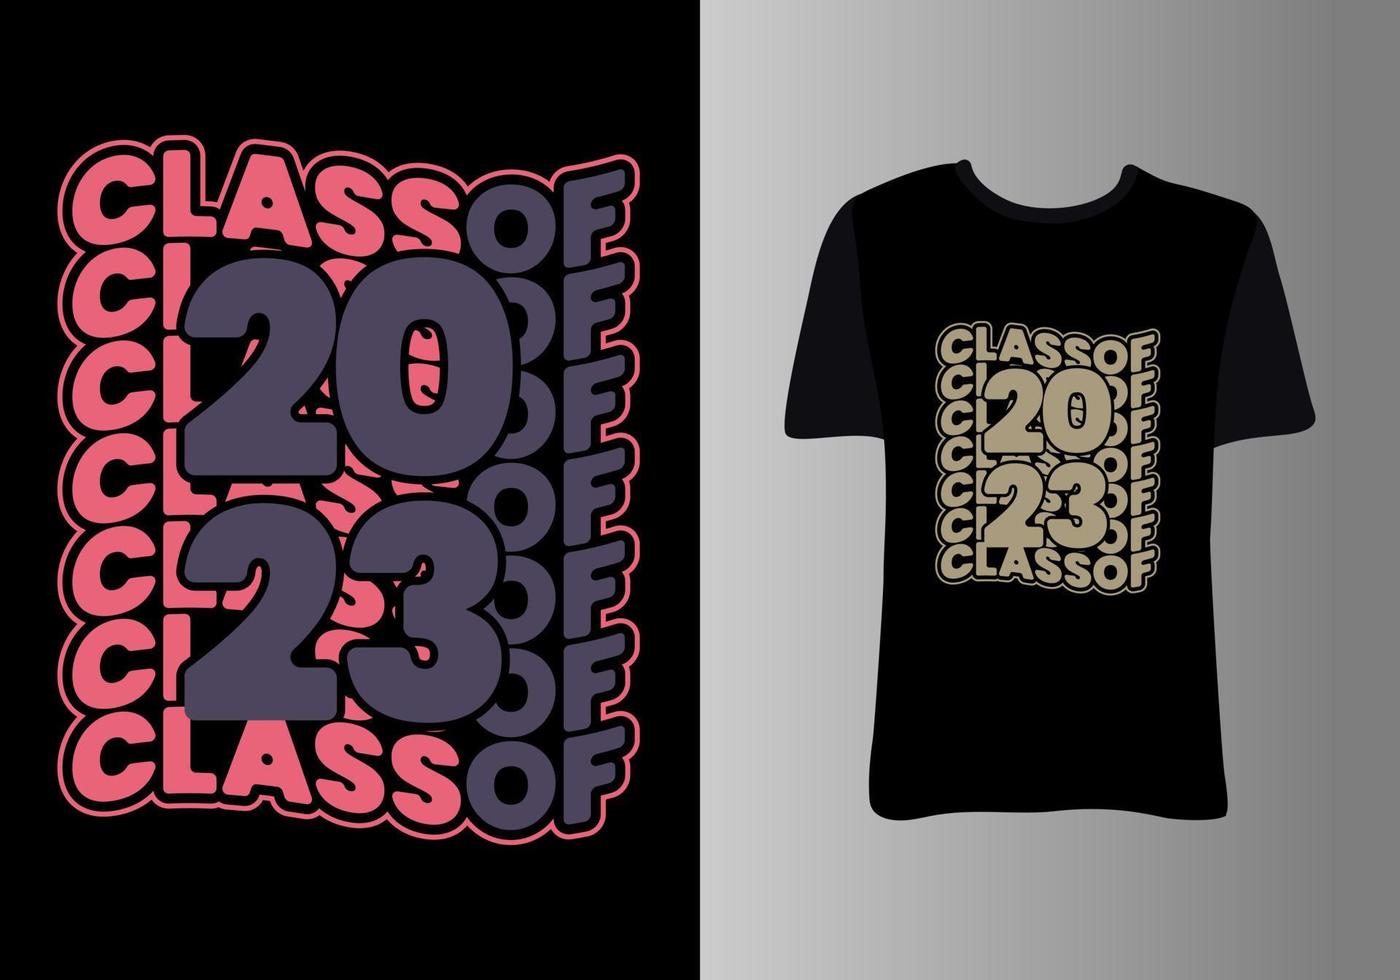 Senior classe do 2023. roupas Projeto para saudações, parabéns evento, camiseta, festa, Alto escola ou Faculdade diplomado. vetor